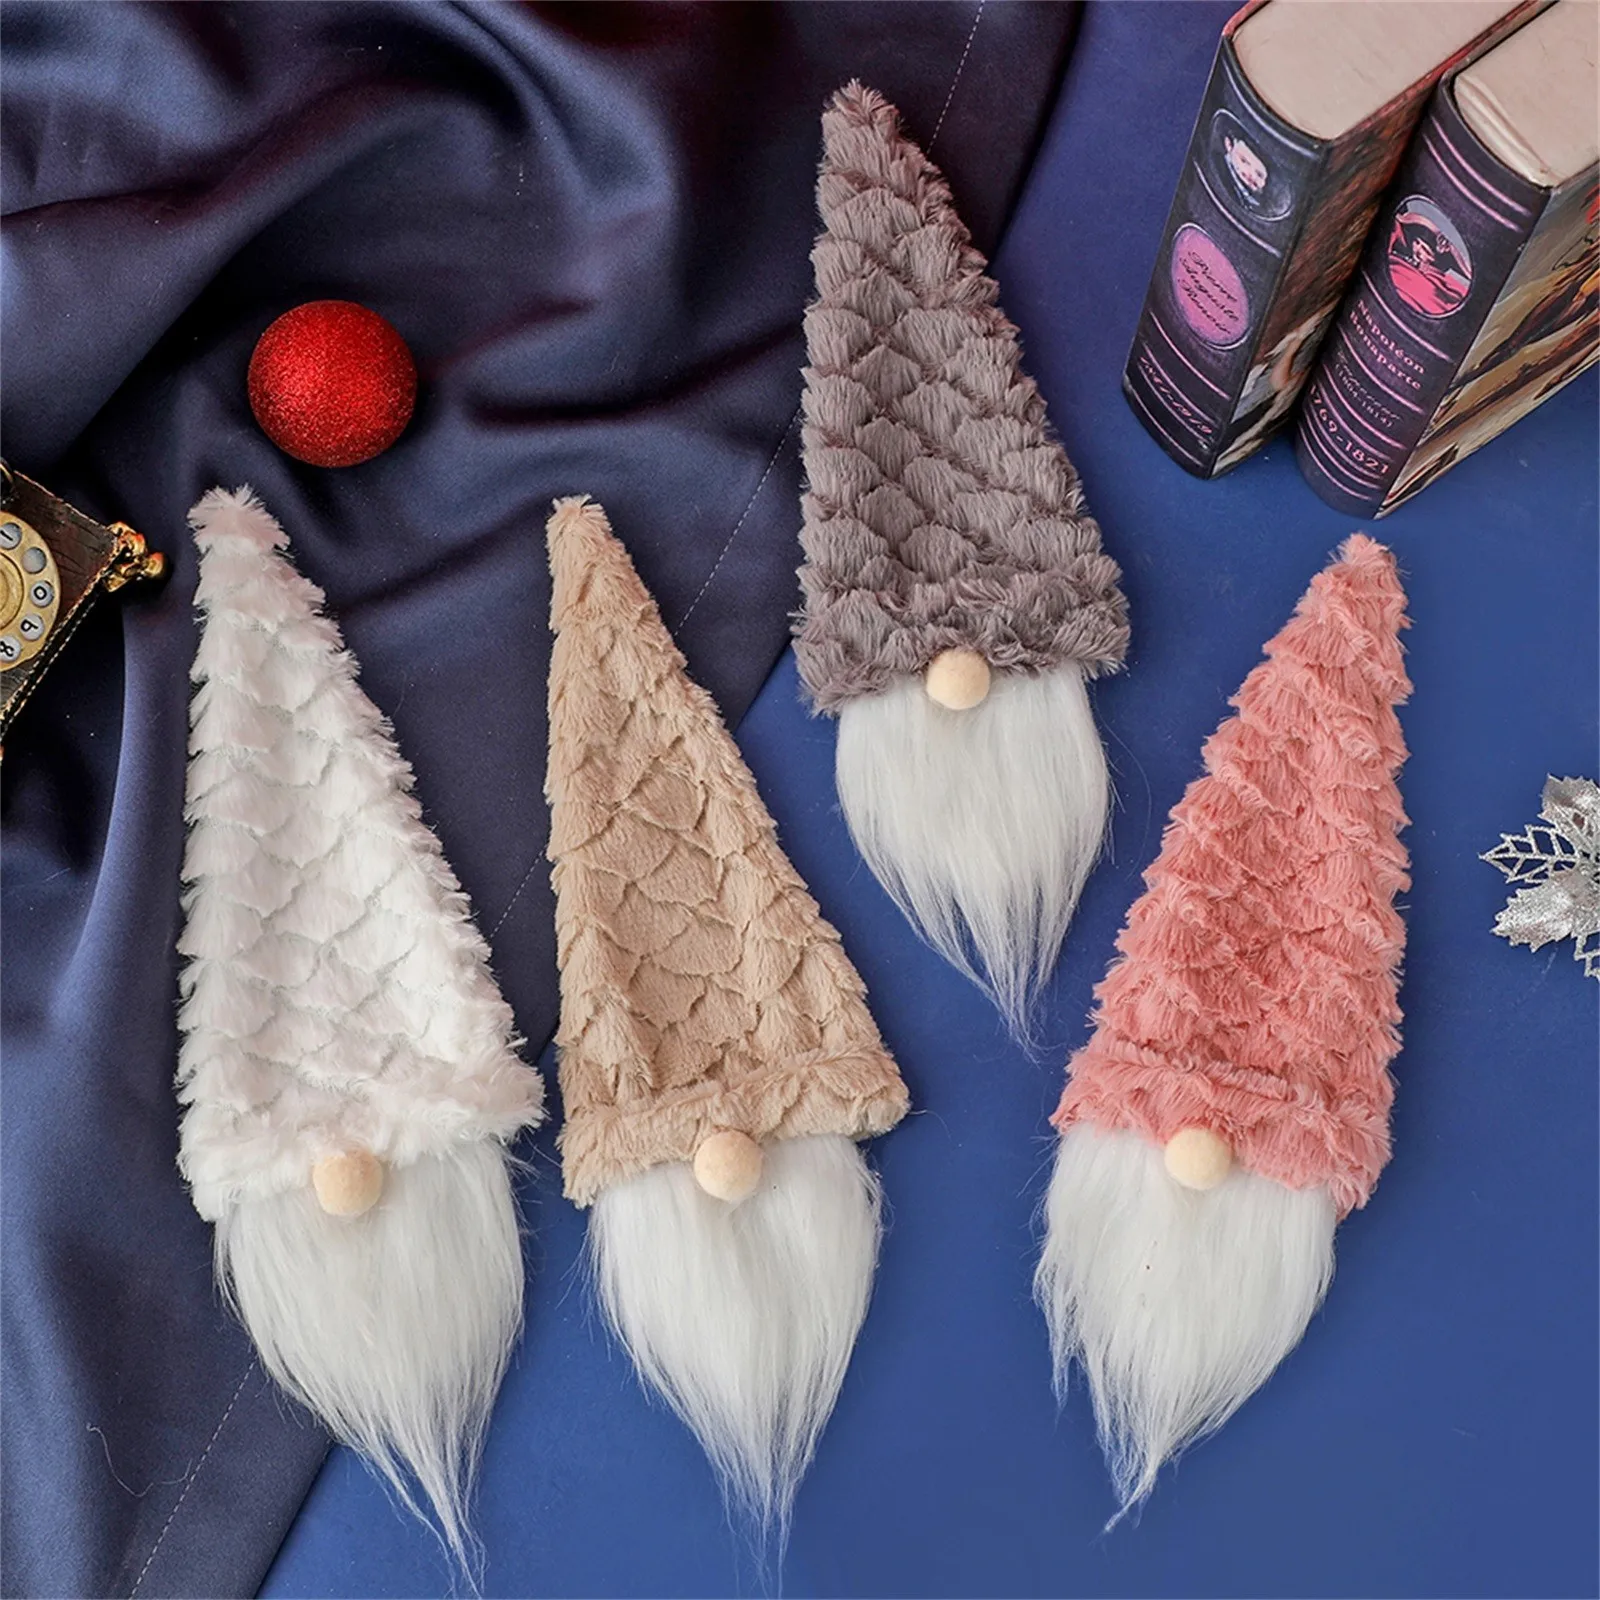 Kép /Karácsonyi-boros-üveg-fedelét-aranyos-gnome-arctalan-6-3271-thumb.jpg